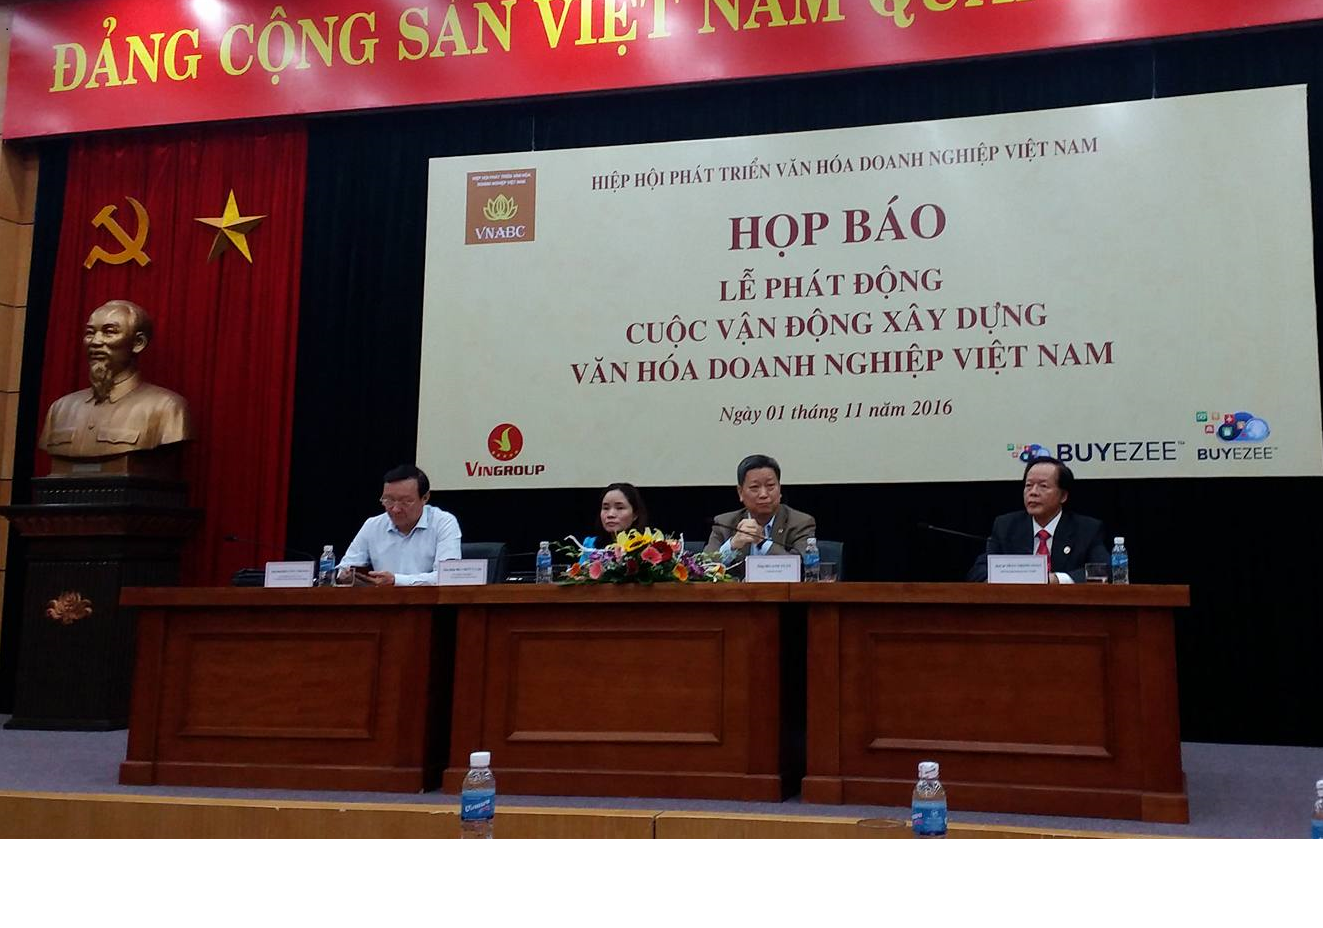 Phát động cuộc vận động “Xây dựng văn hóa doanh nghiệp Việt Nam”